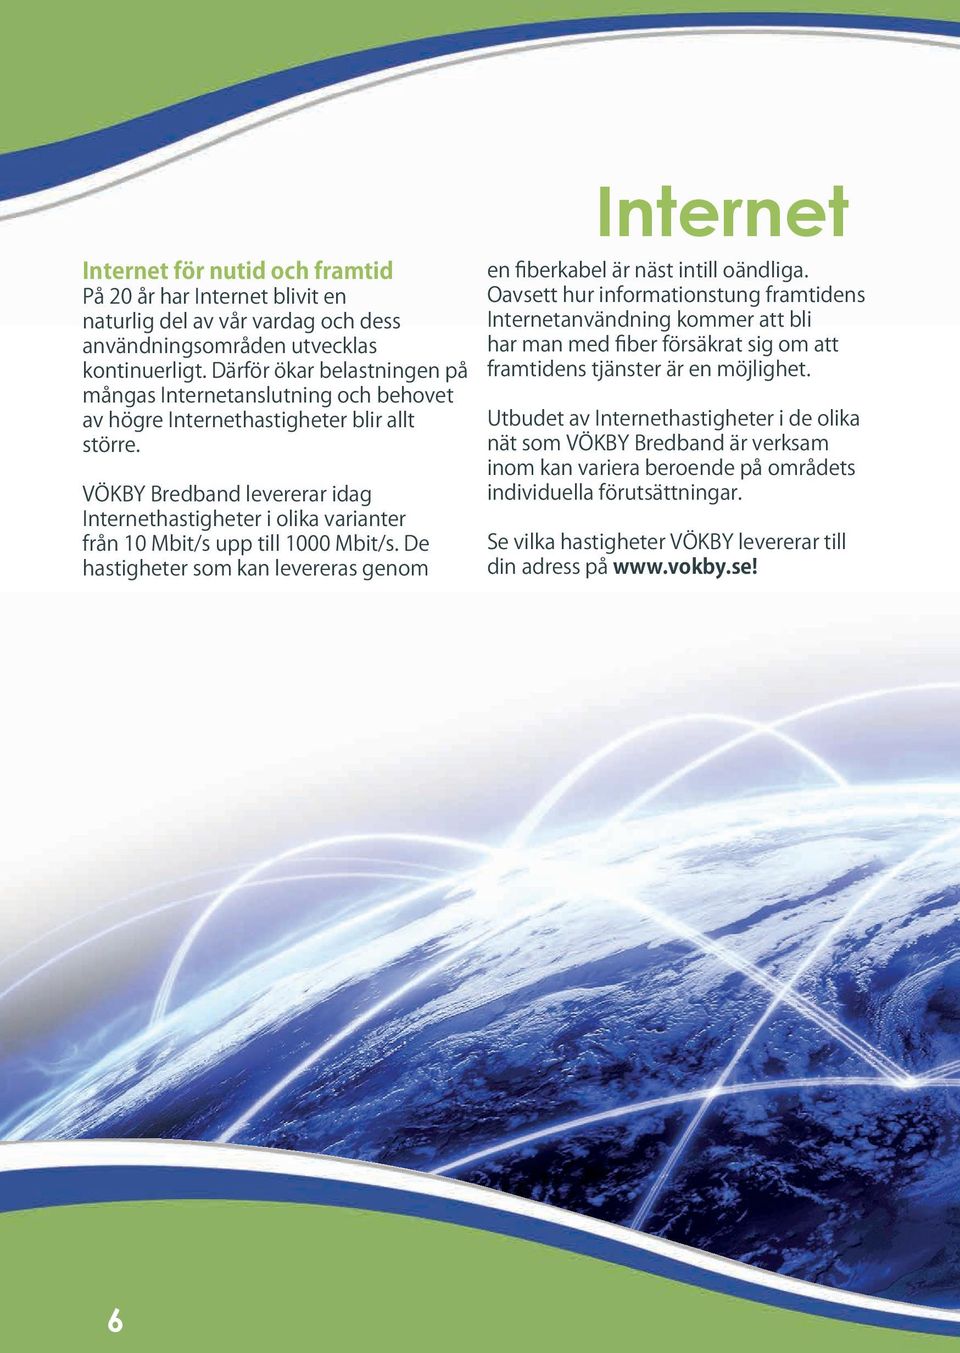 VÖKBY Bredband levererar idag Internethastigheter i olika varianter från 10 Mbit/s upp till 1000 Mbit/s. De hastigheter som kan levereras genom Internet en fiberkabel är näst intill oändliga.